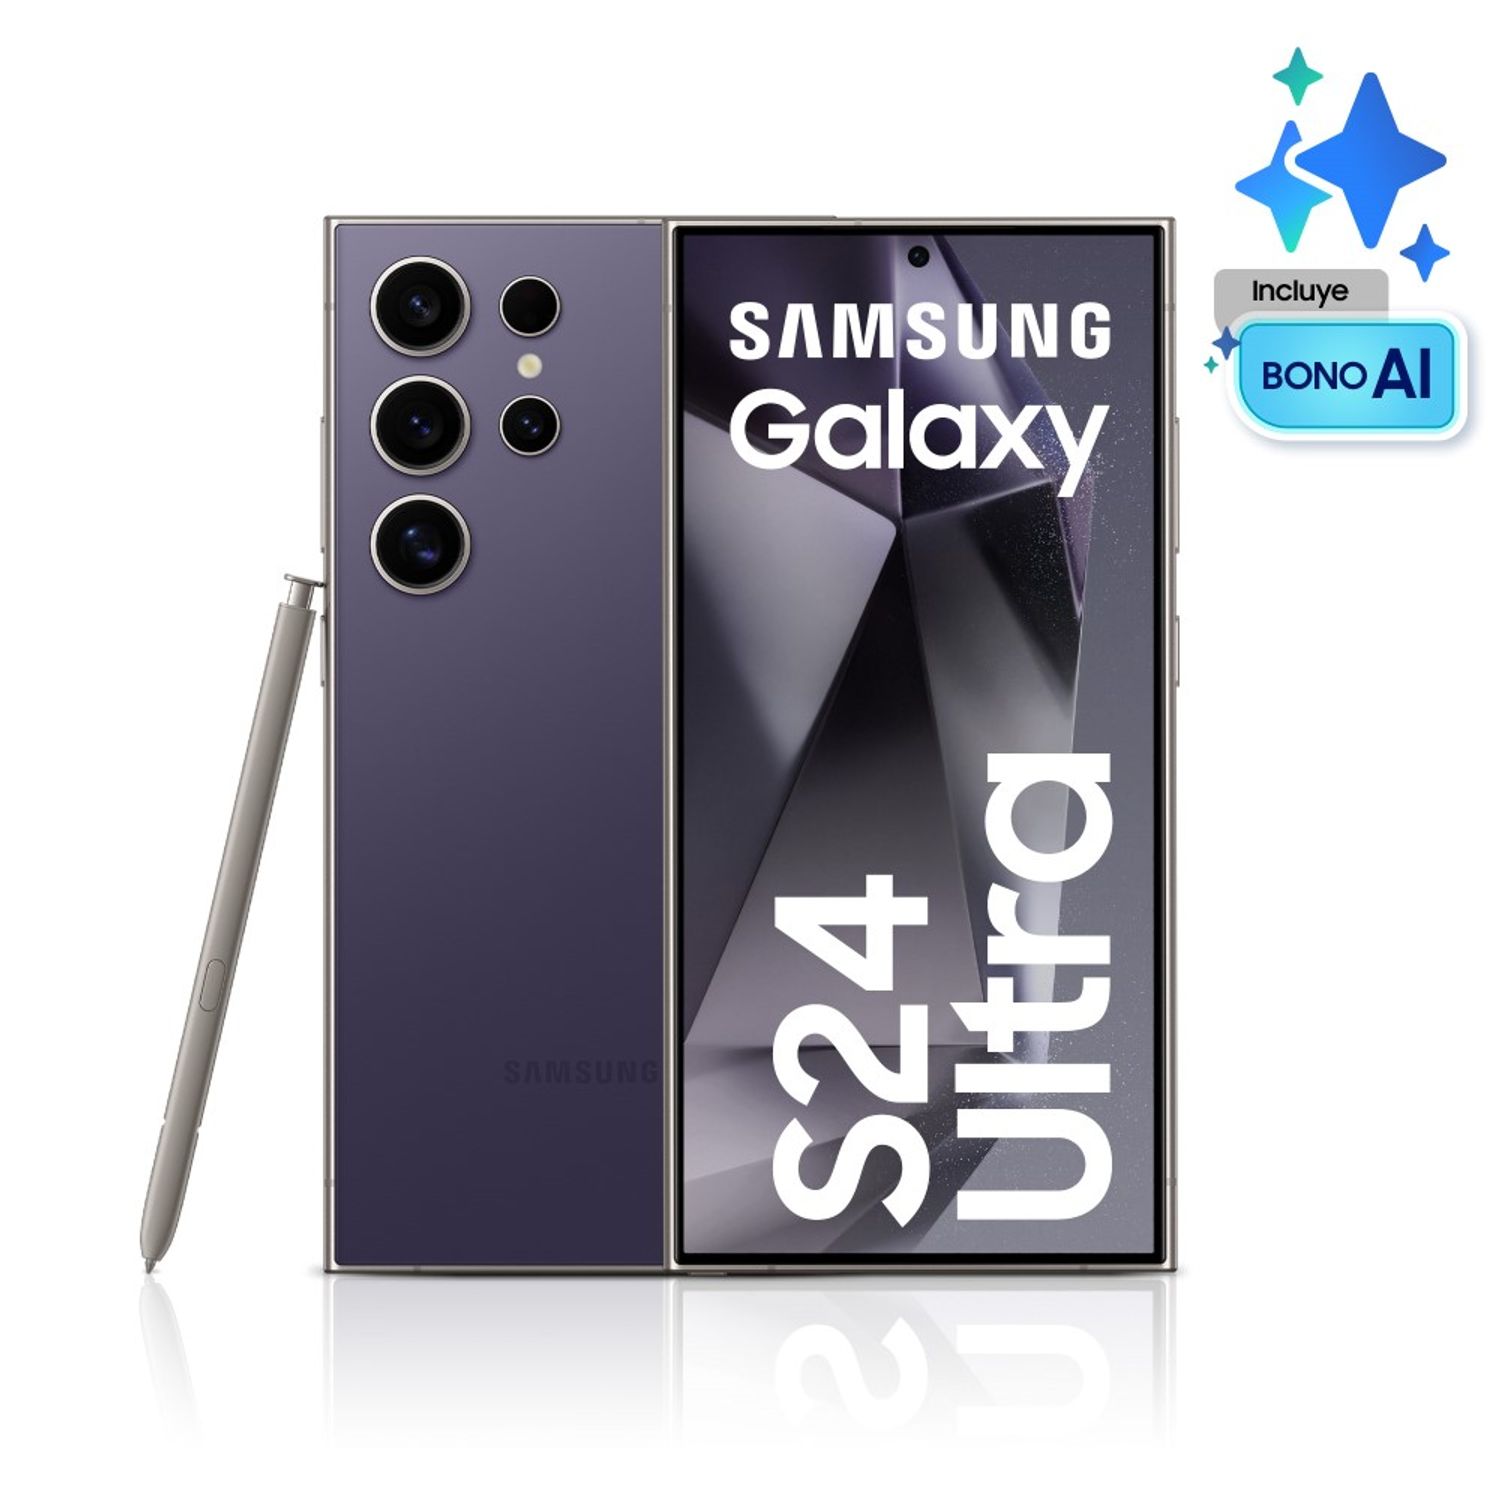 Nuevo Samsung Galaxy S24 Ultra: características, precio y ficha